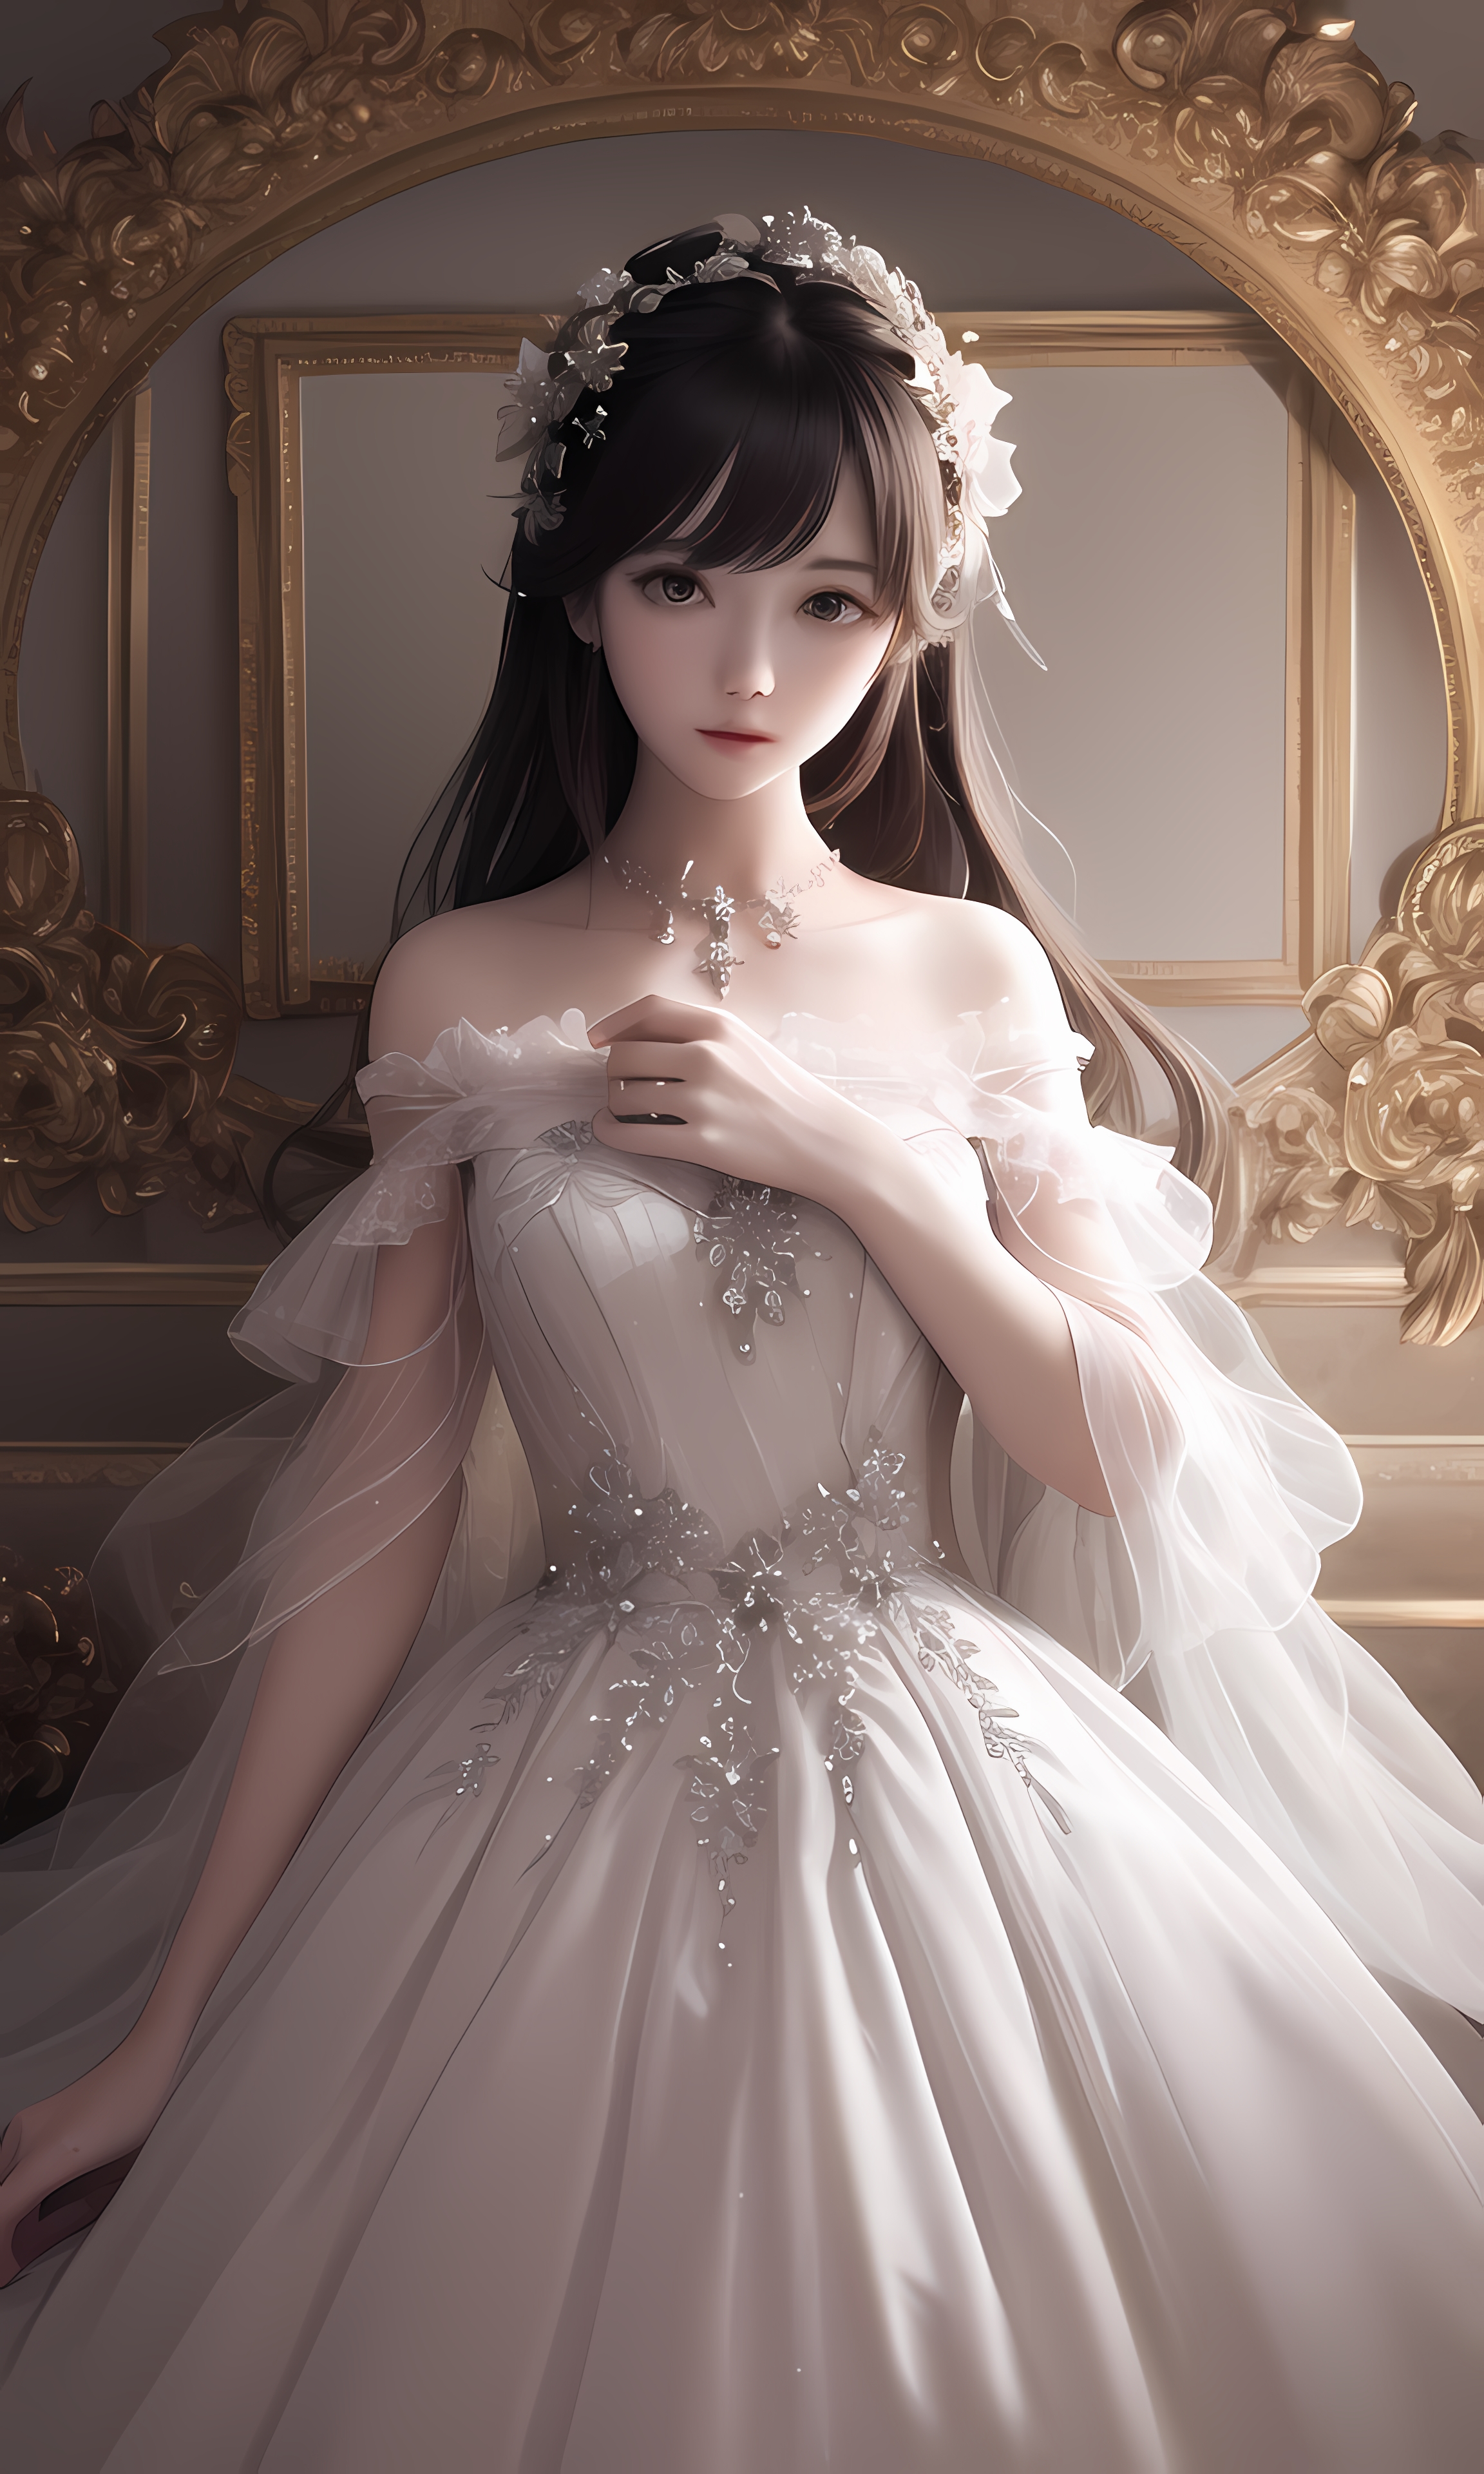 2 5D Necklace Black Eyes Ai Art Model From Xiaolxl Choker Vertical Women Asian Dress 2304x3840